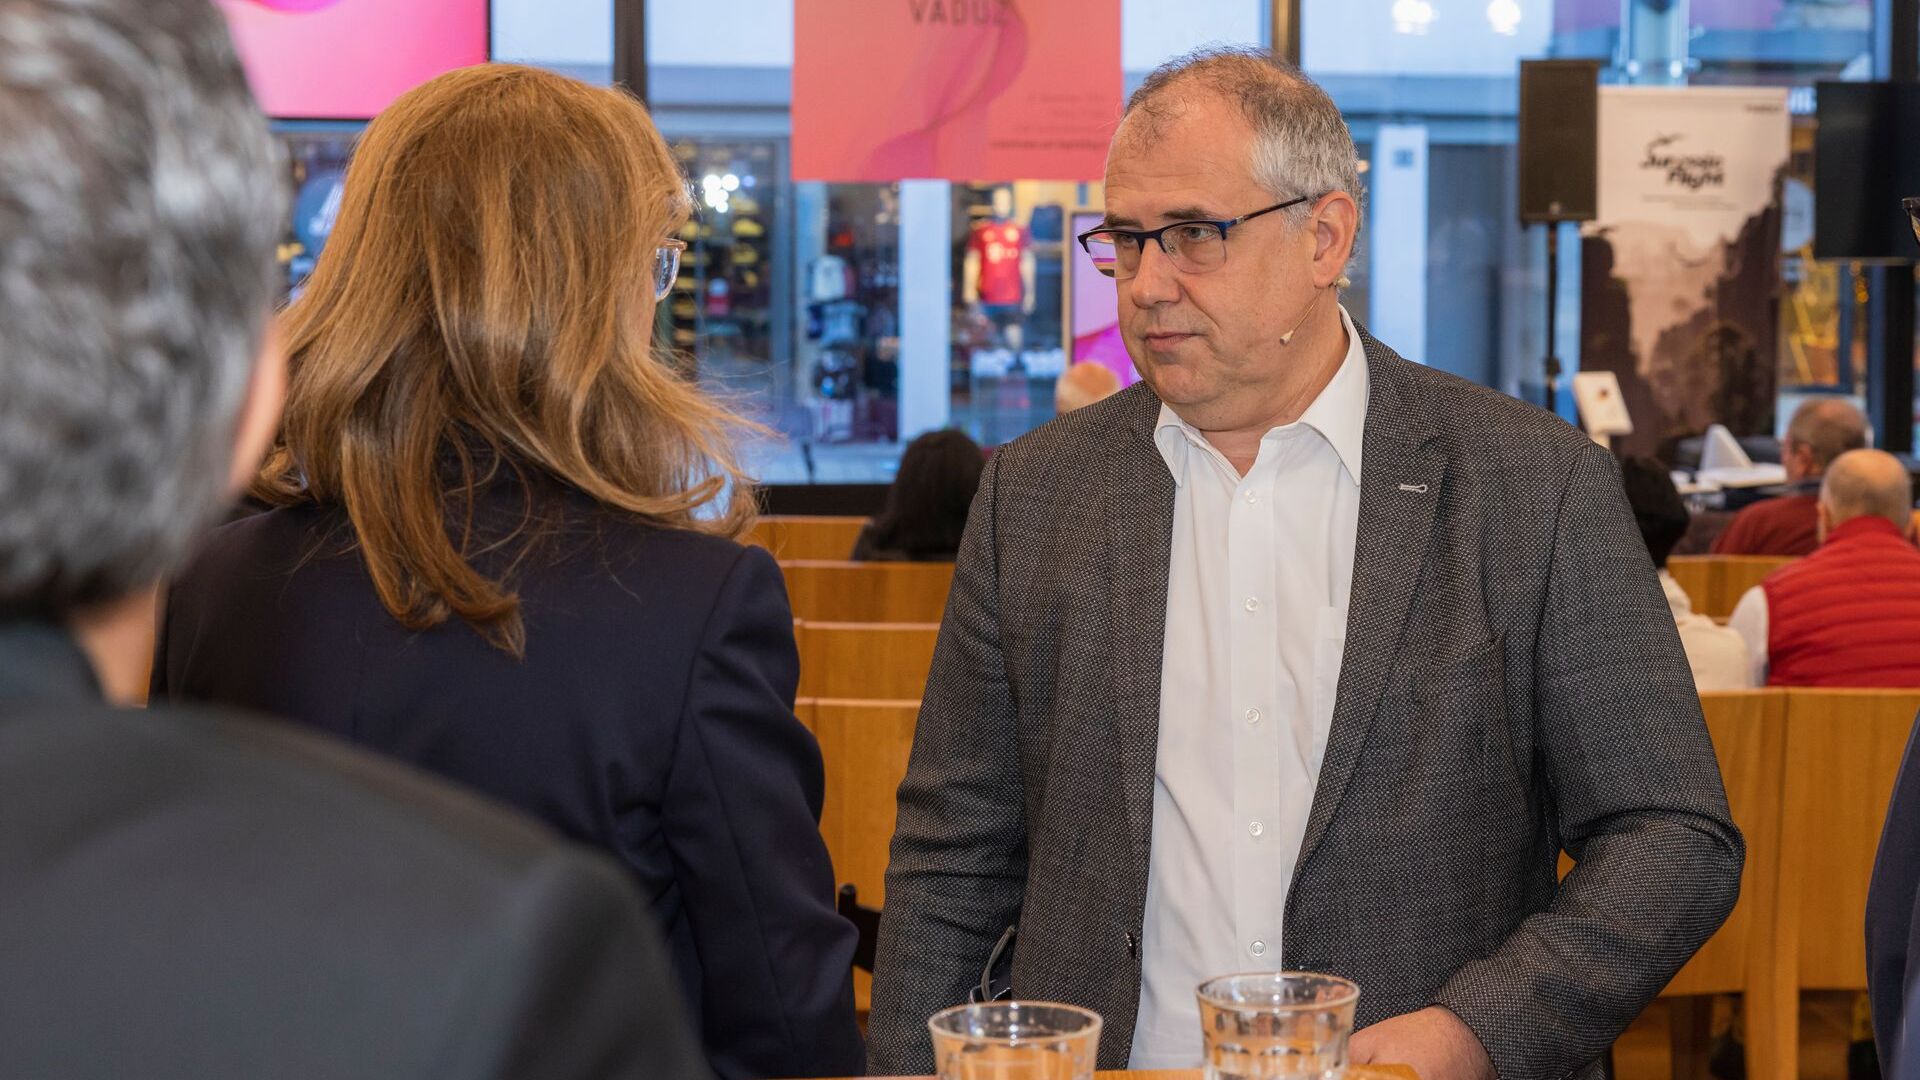 La “Digitaltag Vaduz” è stata accolta dal Kunstmuseum della capitale del Principato del Liechtenstein sabato 6 novembre 2021: a colloquio Sabine Mounani, Vice Primo Ministro, e Manfred Bischof, Sindaco della capitale